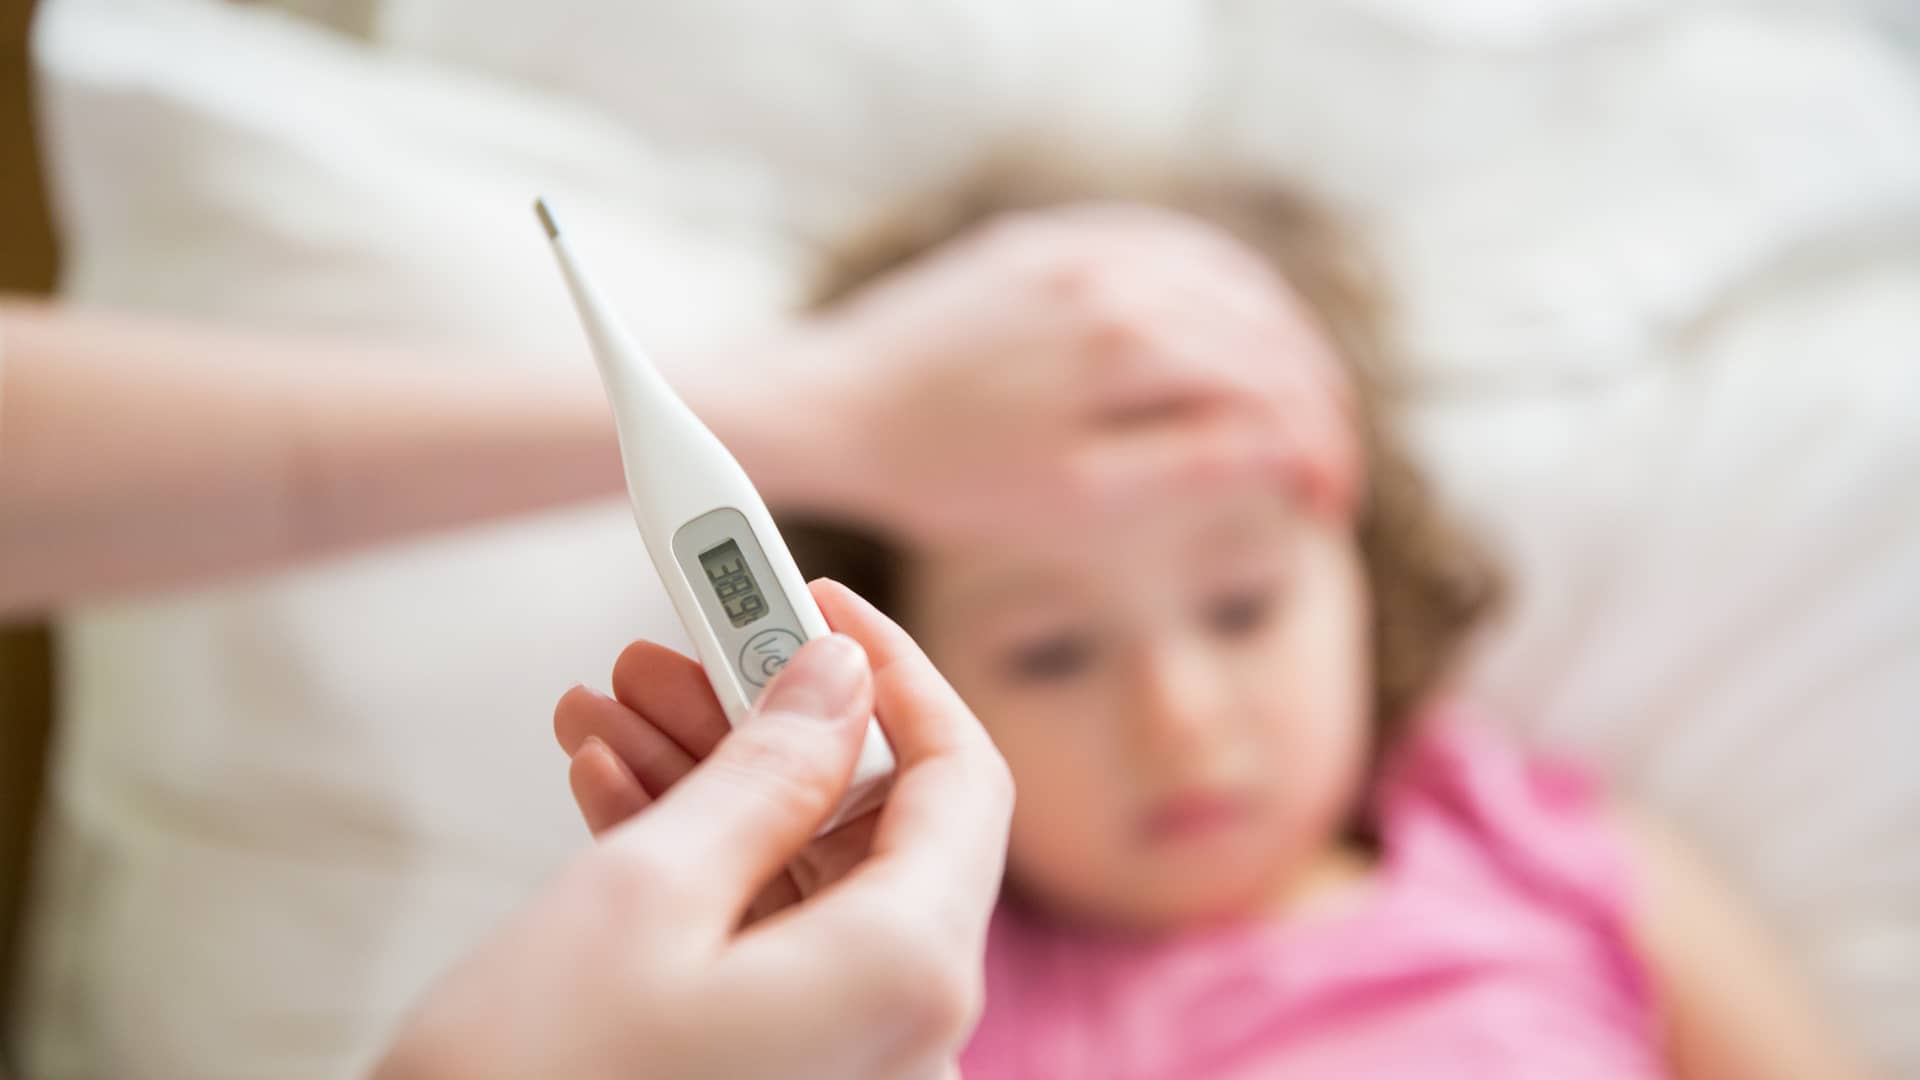 Enfermedades en bebés: las más comunes son las infectocontagiosas